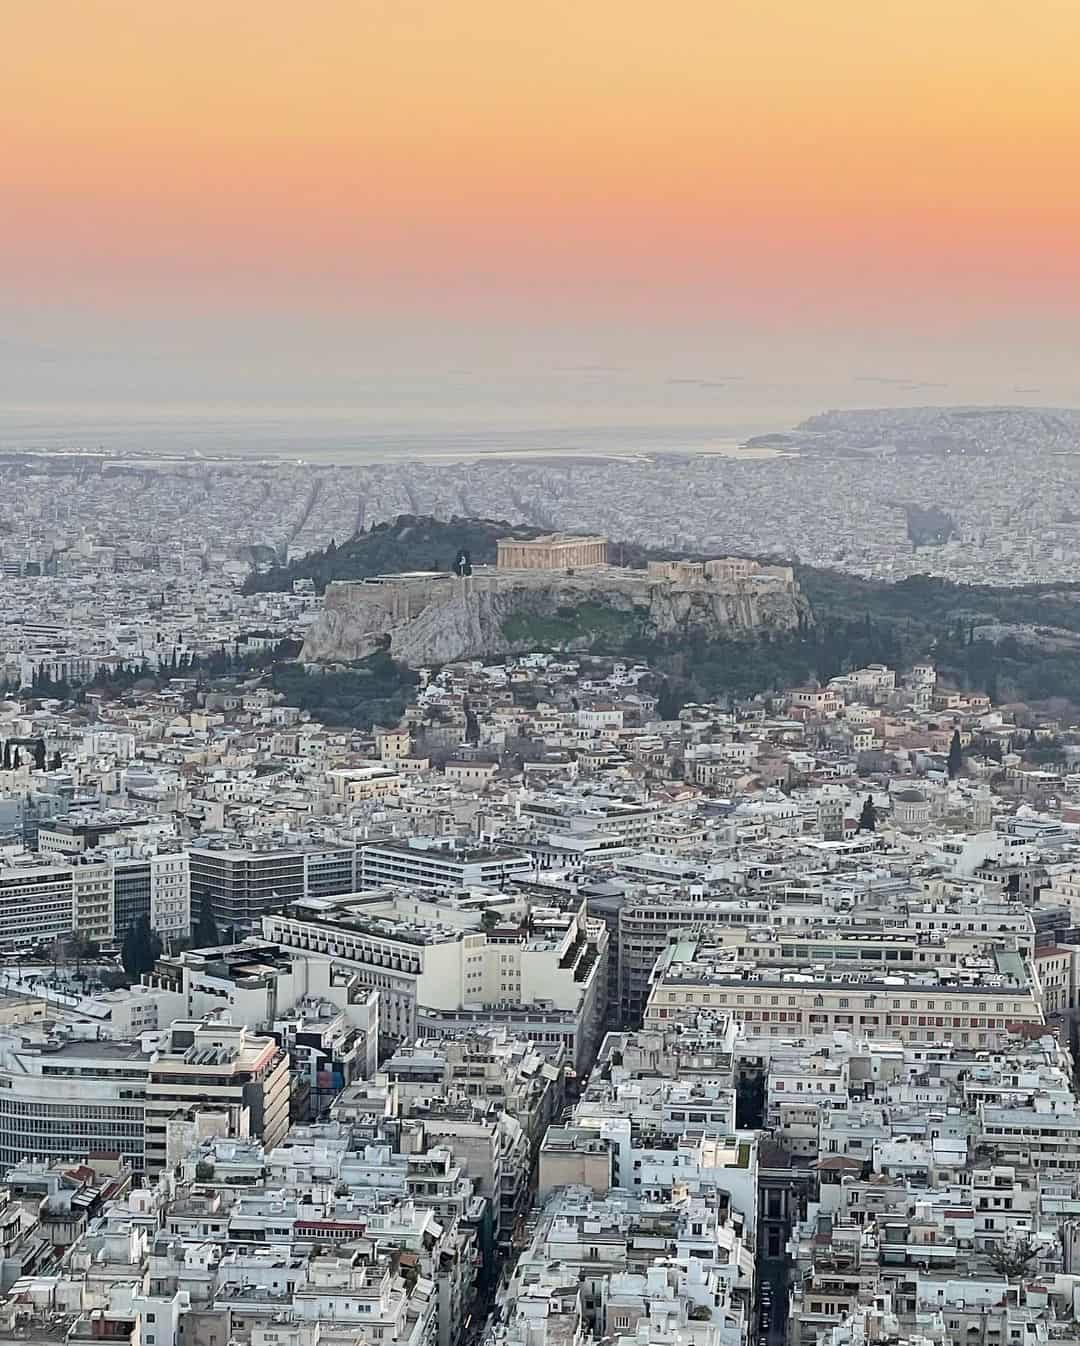 Kolonaki, Athens